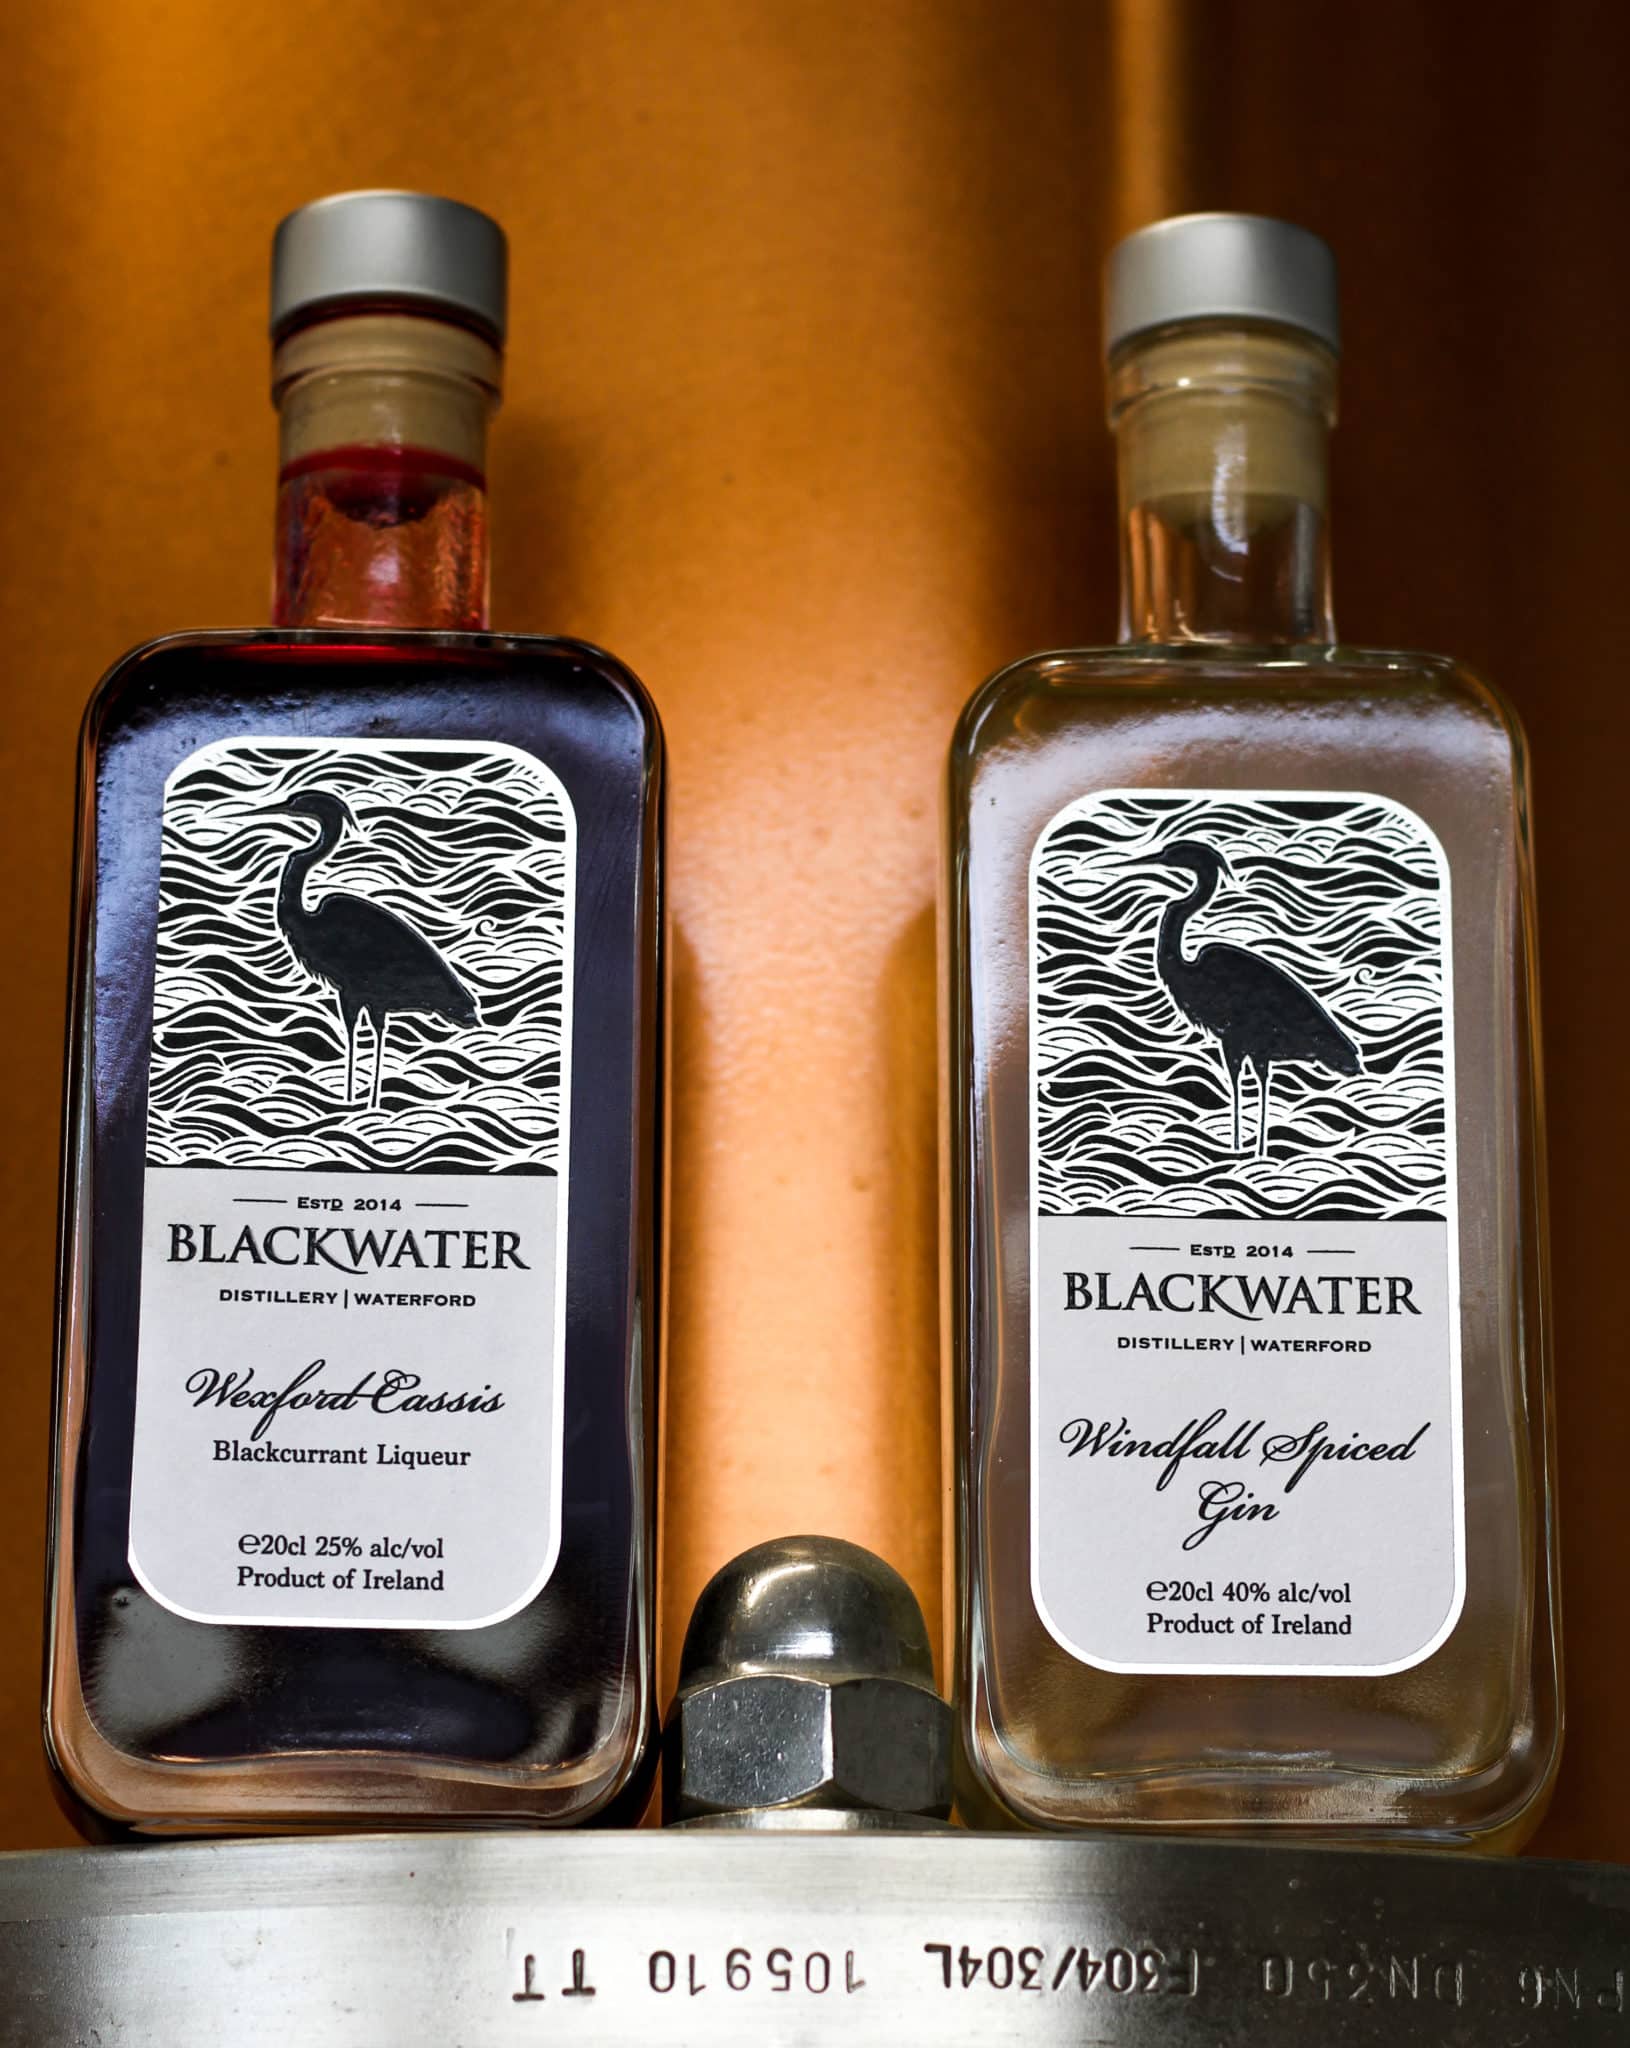 October's Blackwater Tasters